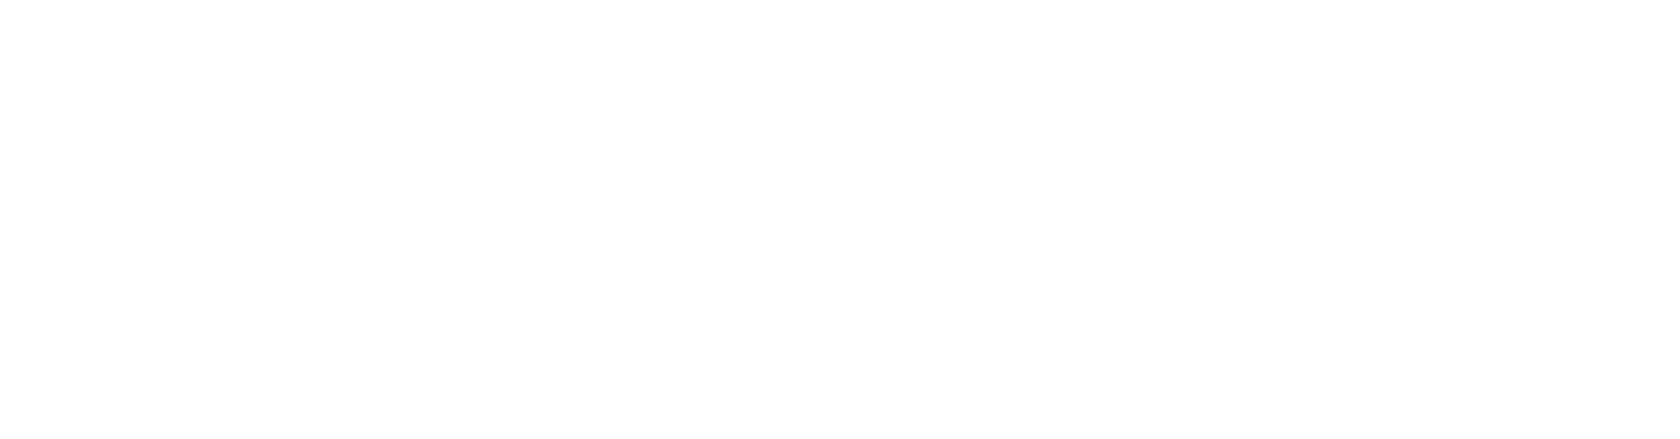 TU Darmstadt Sommerkonferenz